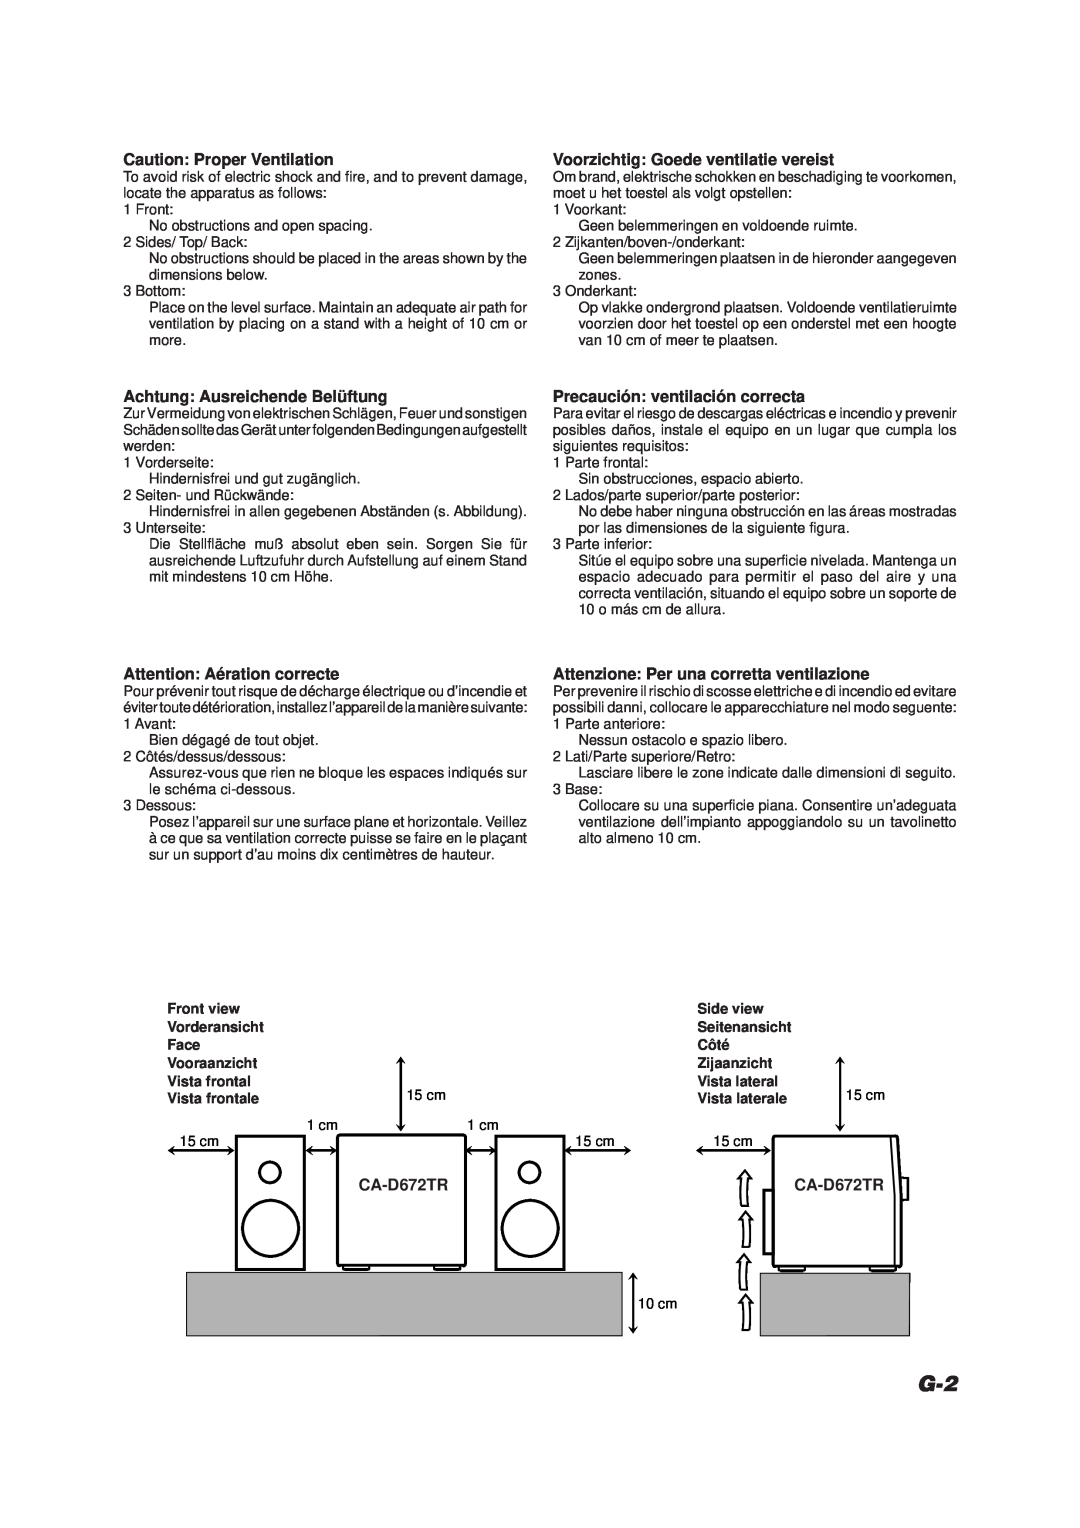 JVC CA-D672TR manual Caution: Proper Ventilation, Voorzichtig: Goede ventilatie vereist, Achtung: Ausreichende Belüftung 